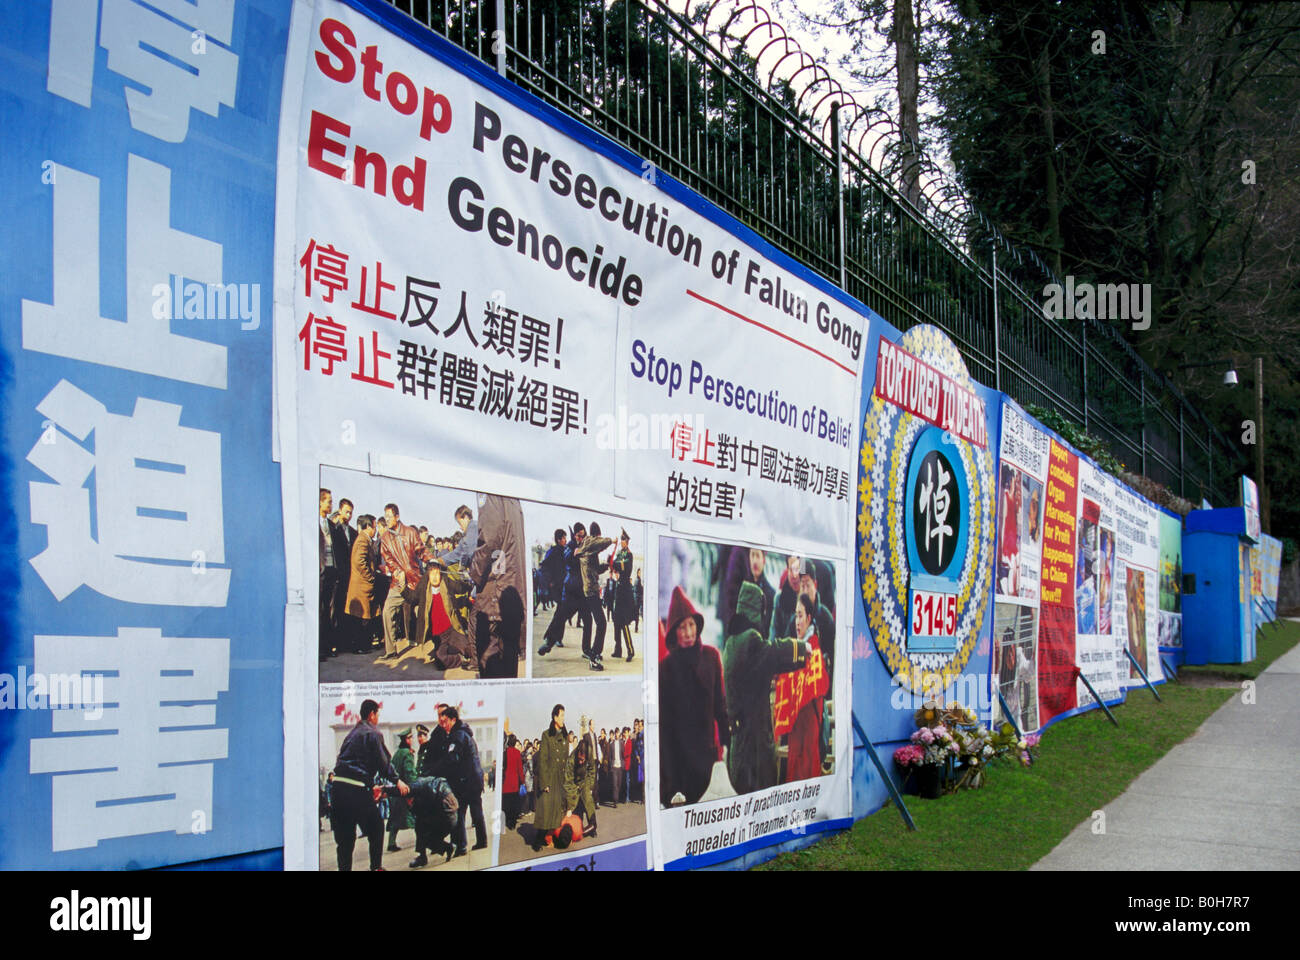 Falun Gong Protest Zeichen gegen Verfolgung und Völkermord geschrieben am chinesischen Konsulat, Vancouver - Menschenrechtsfragen Stockfoto